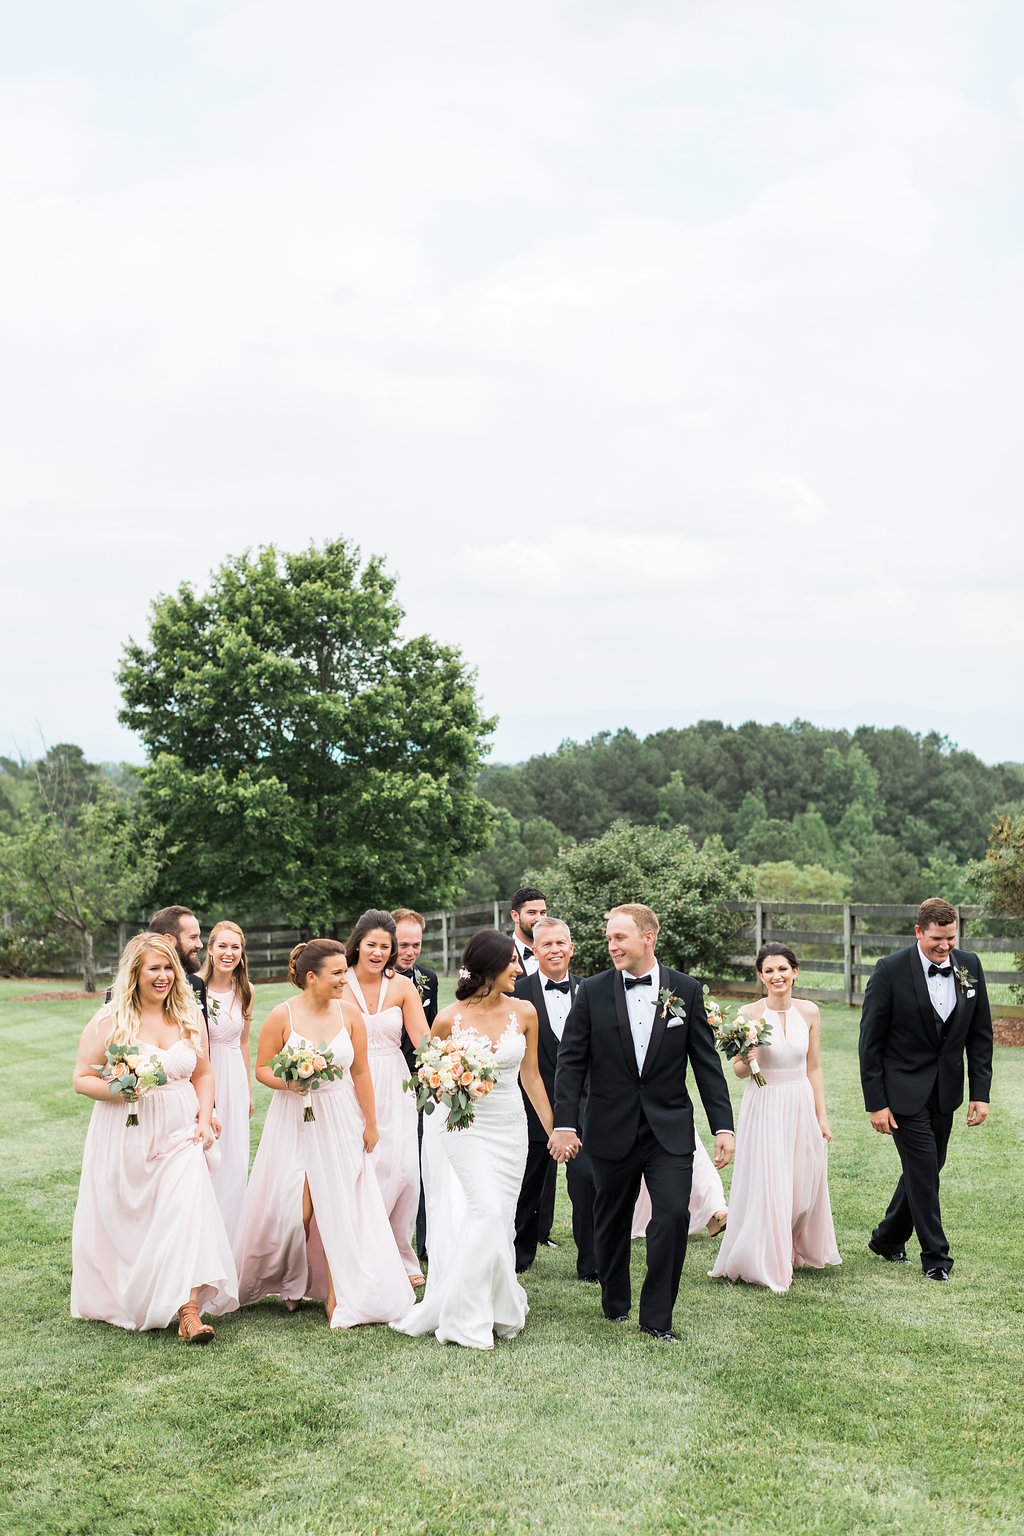 Northern Georgia Wedding Venue - Walnut Hill Farm Wedding - Simplistic Wedding Details